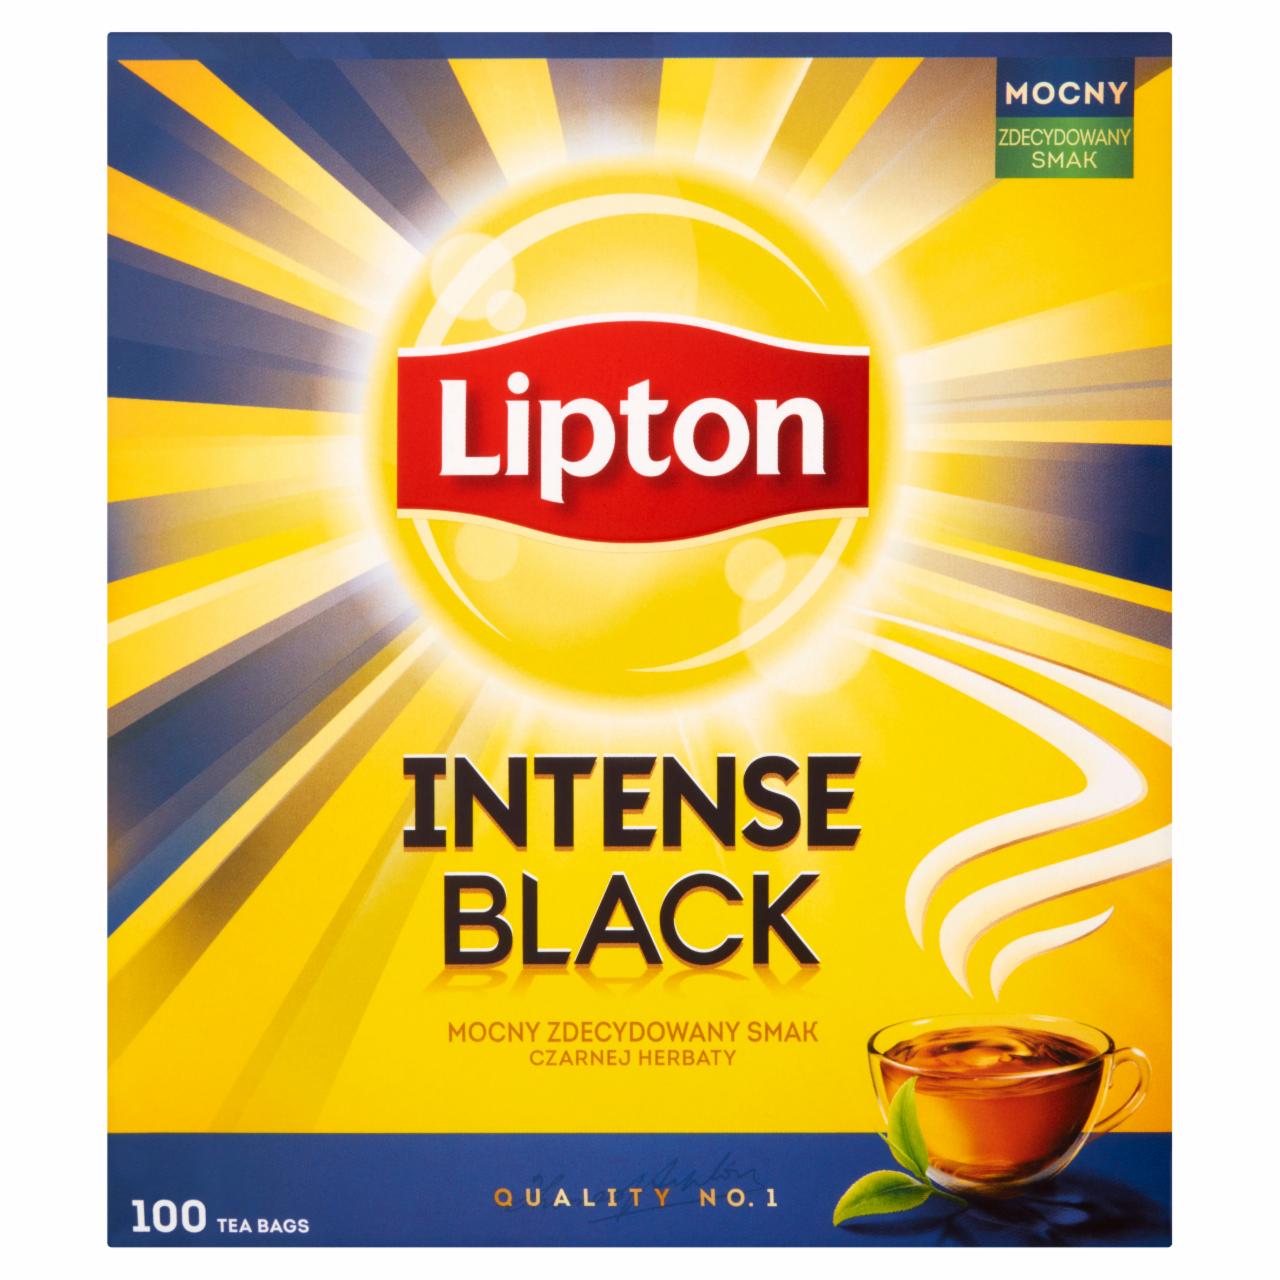 Zdjęcia - Lipton Intense Black Herbata czarna 230 g (100 torebek)